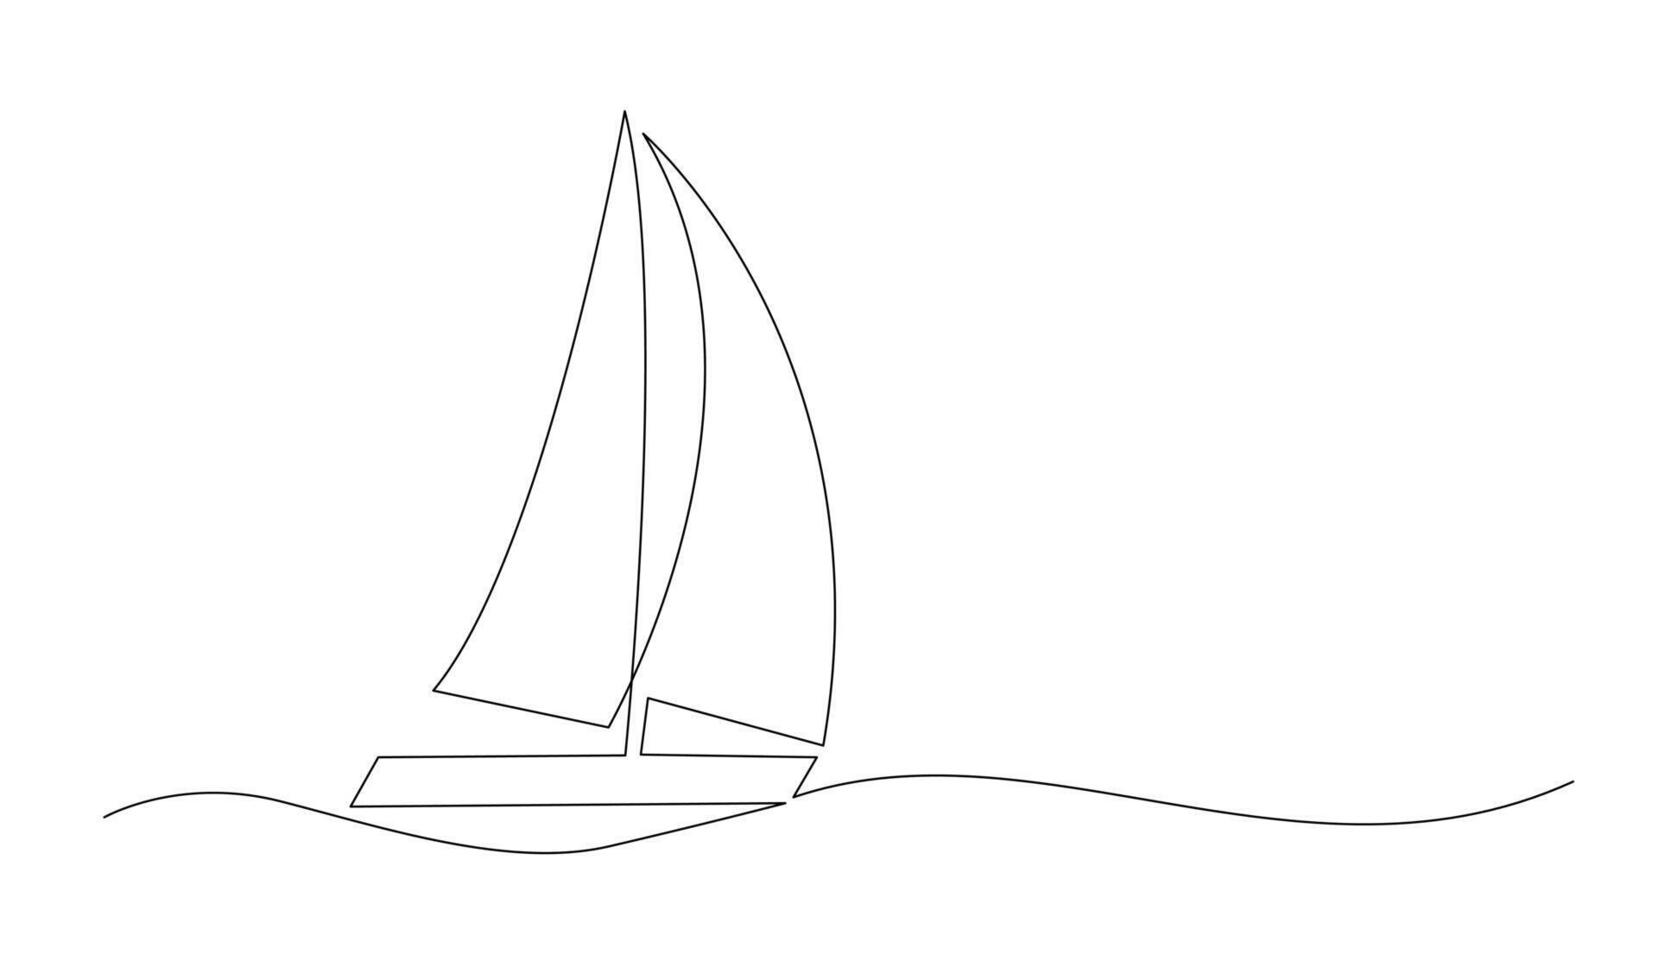 enda kontinuerlig linje konst hav båt ikon. Yacht resa turism begrepp silhuett symbol design. ett skiss översikt teckning vektor illustration